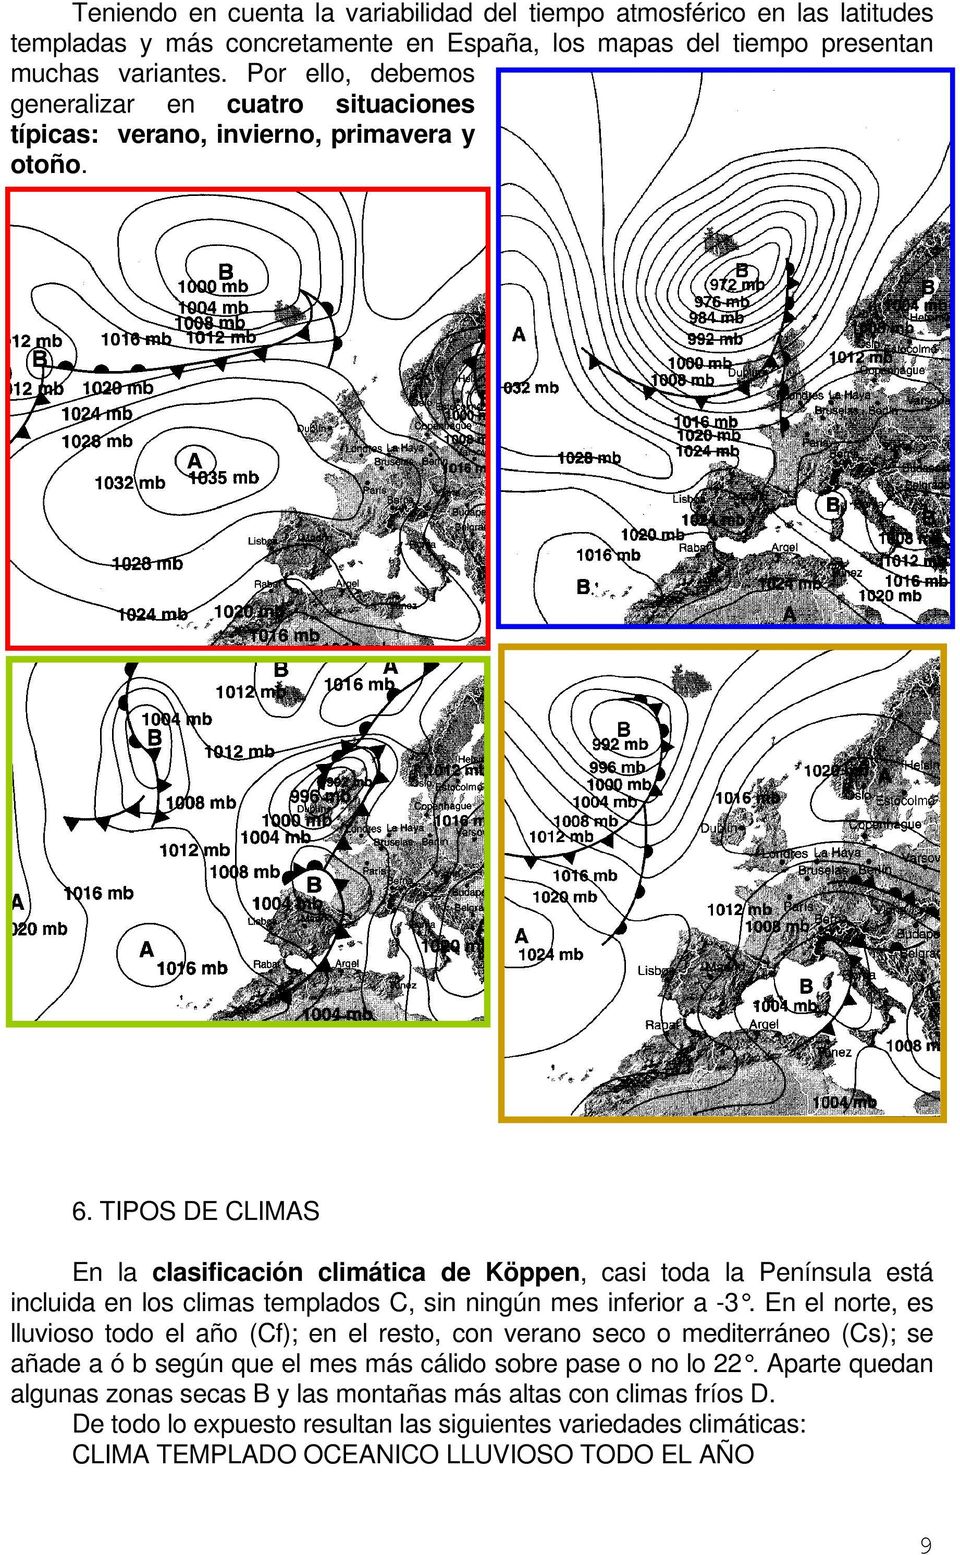 TIPOS DE CLIMAS En la clasificación climática de Köppen, casi toda la Península está incluida en los climas templados C, sin ningún mes inferior a -3.